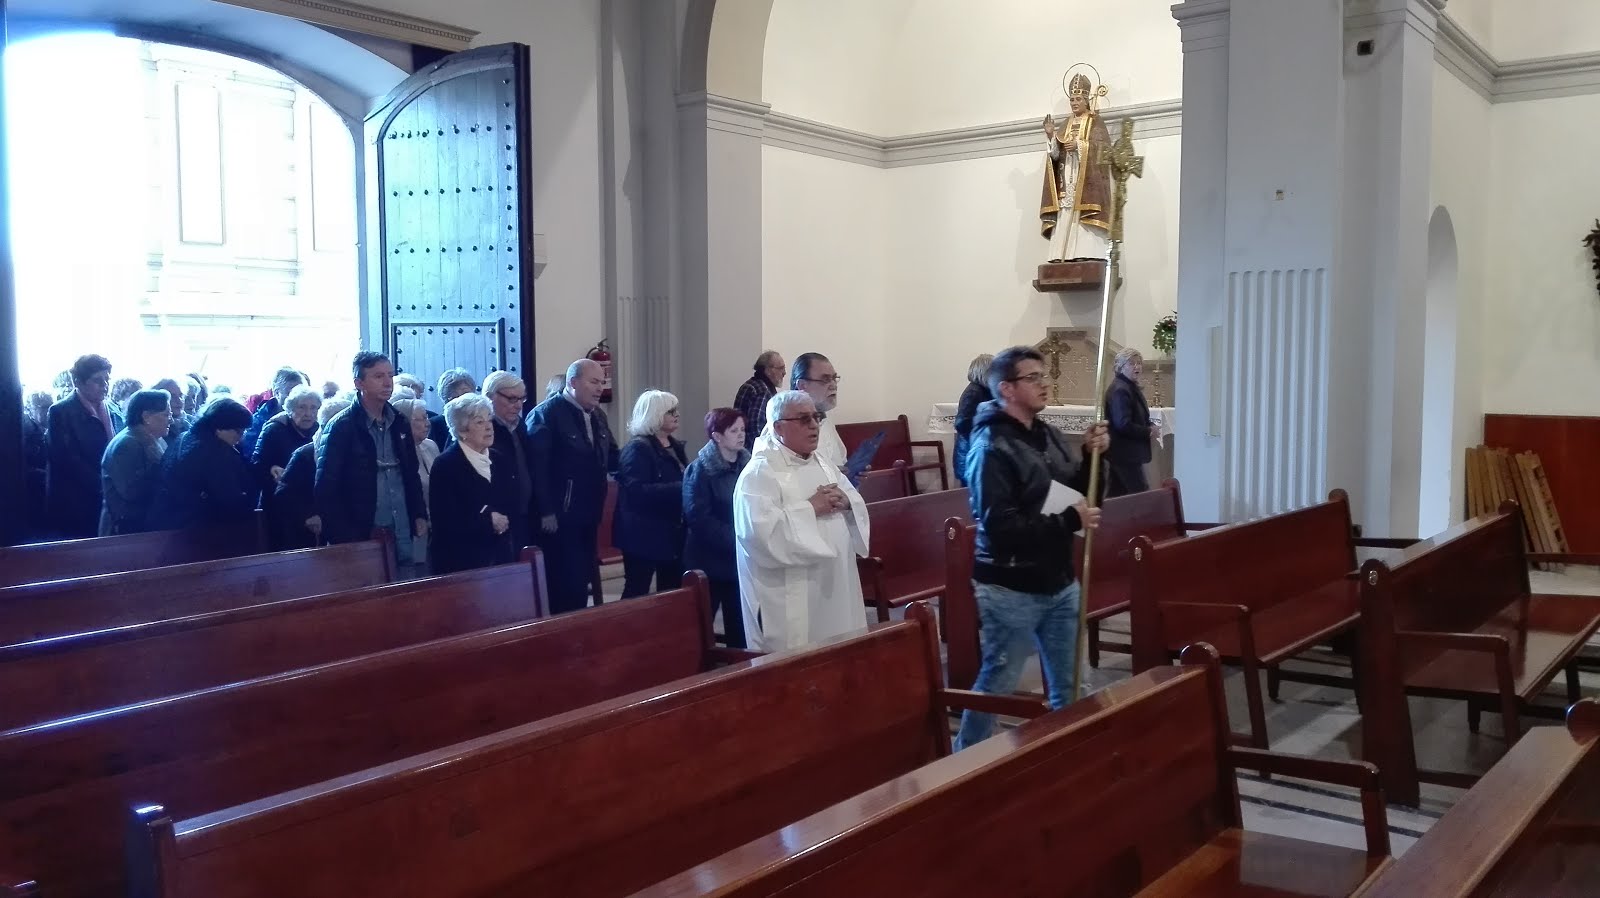 Peregrinació parròquies St. Pere i La Sang (1-5-2016)